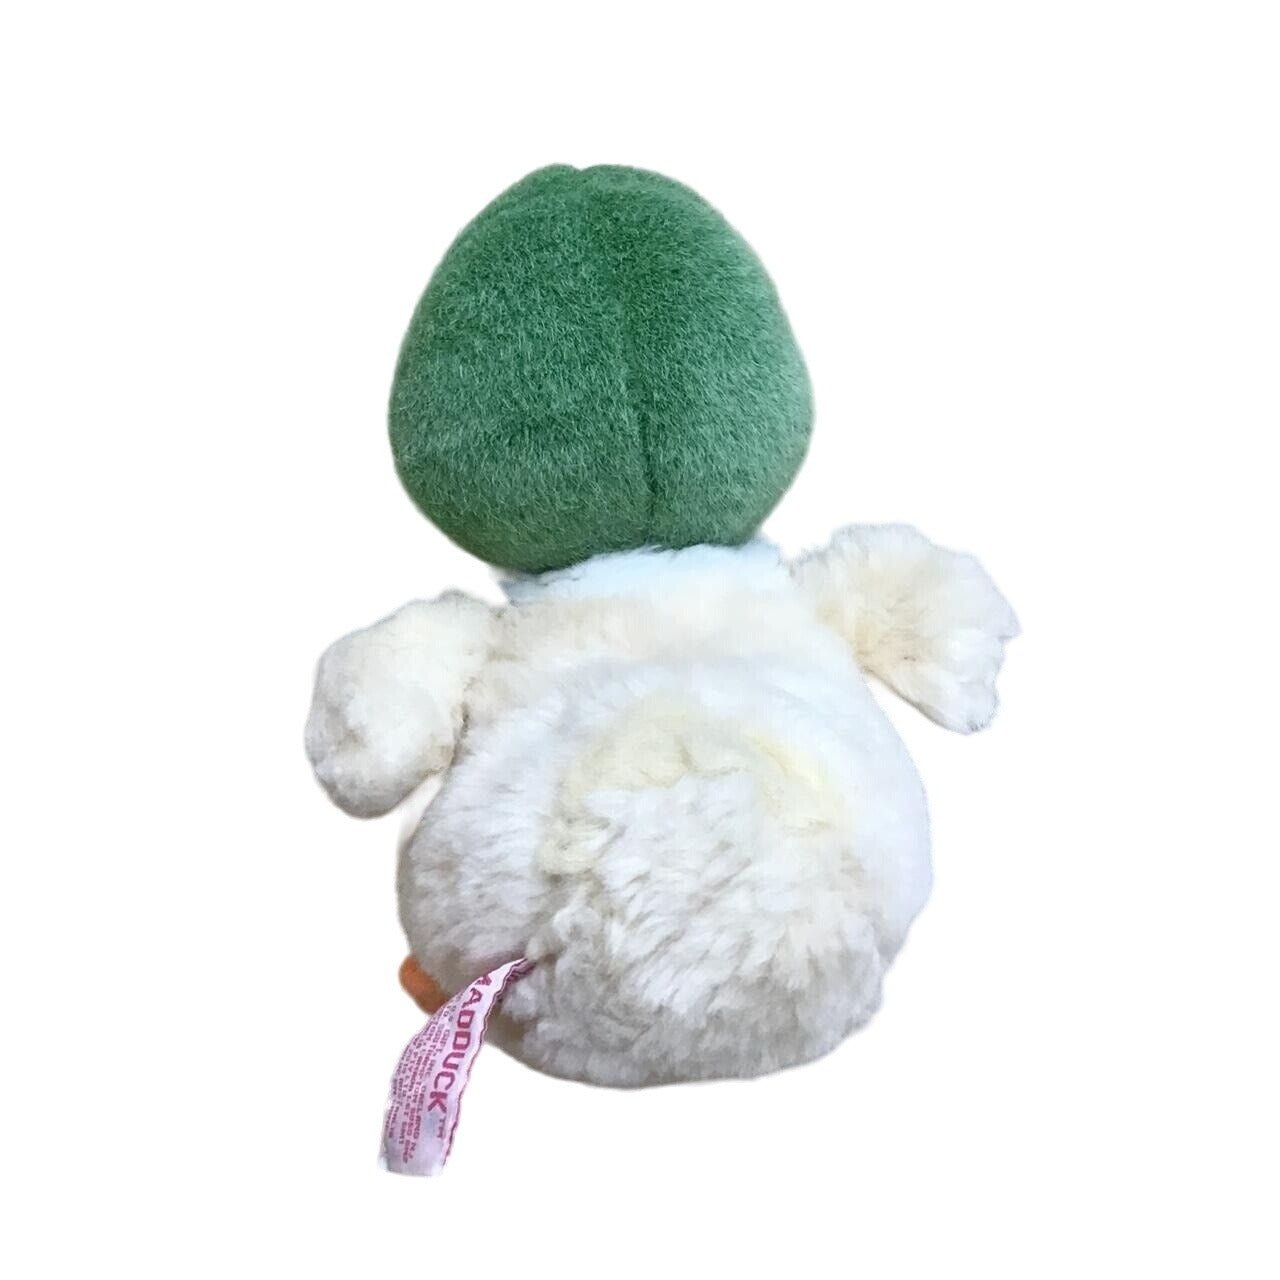 Madduck Stuffed Animal -954